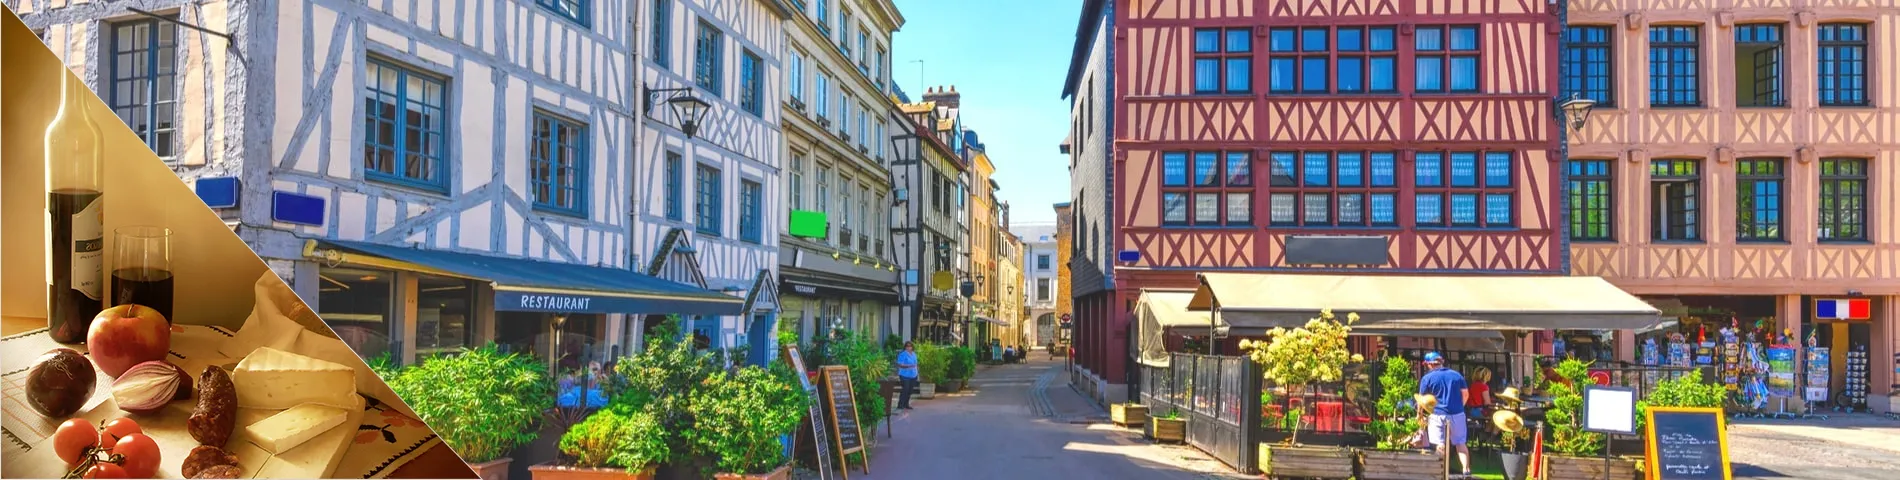 Rouen - Francés + Cultura